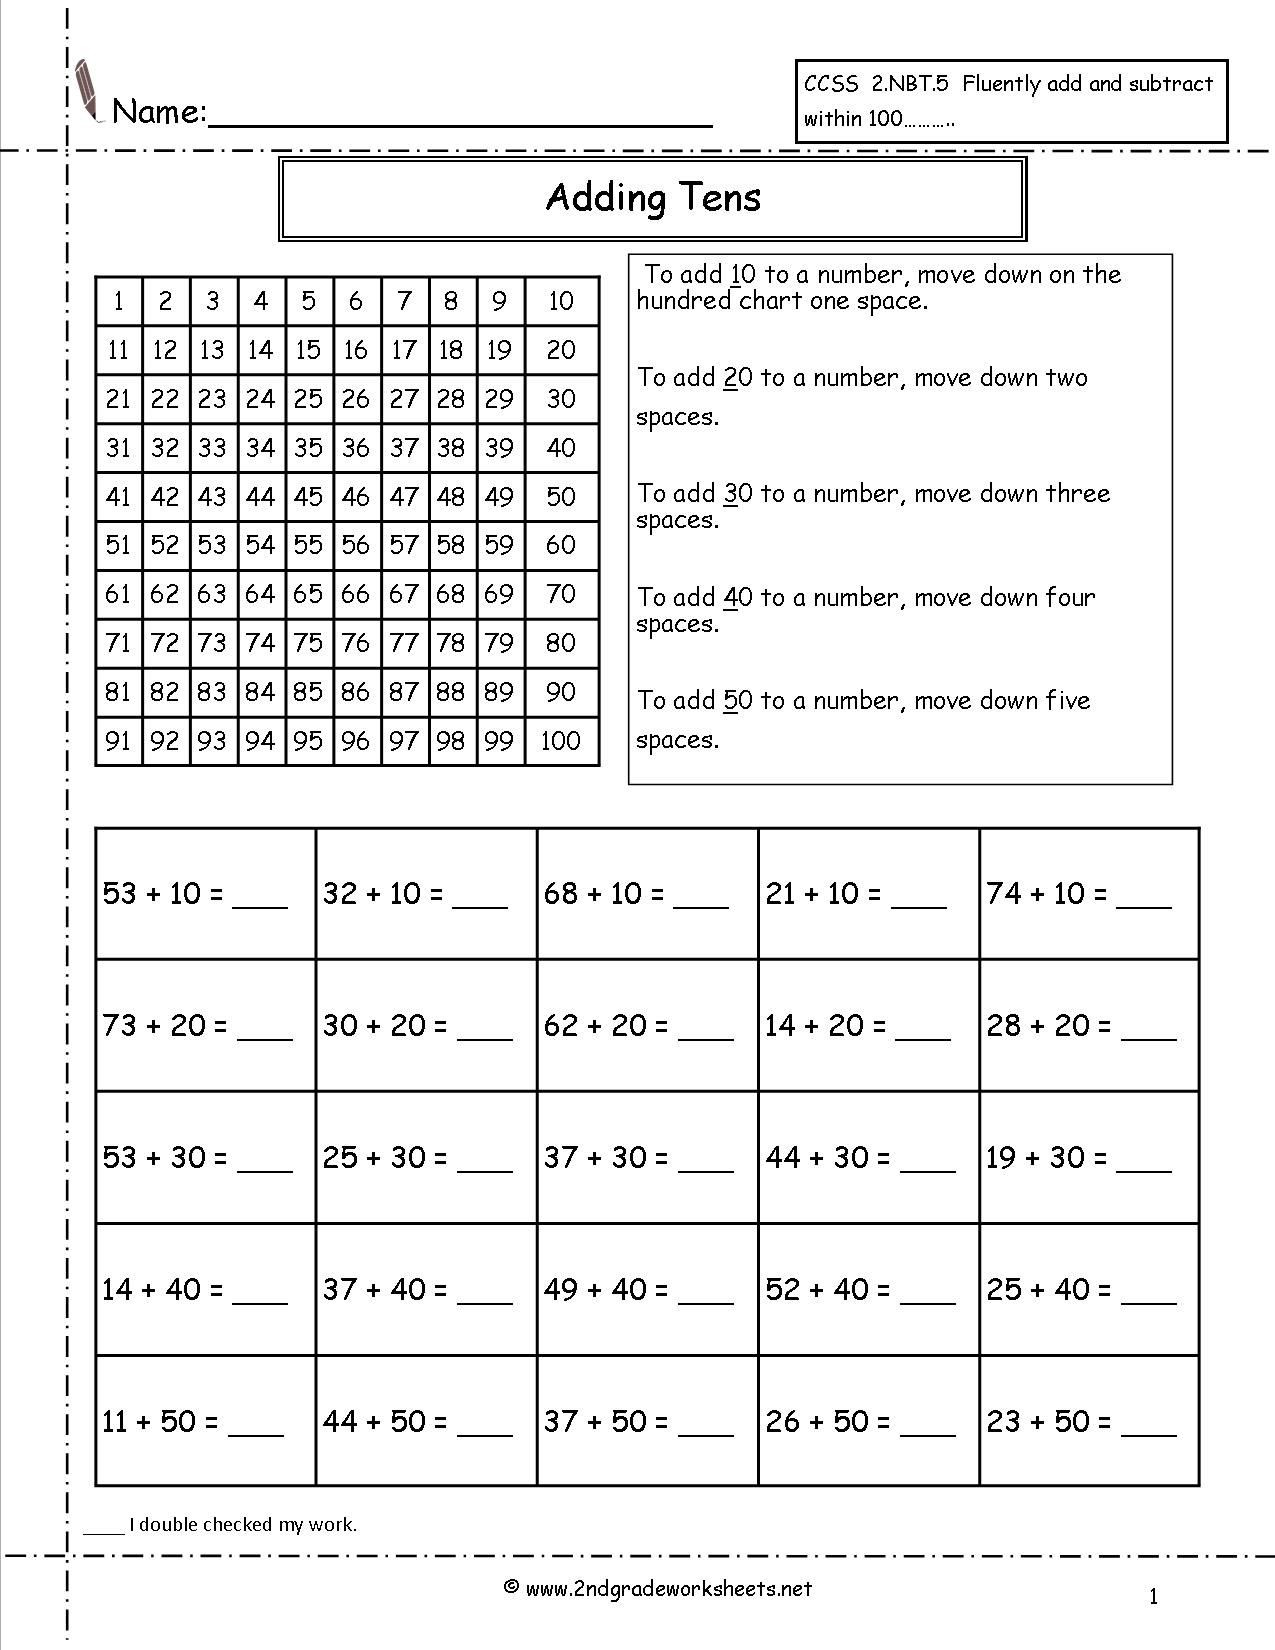 Ones Tens Hundreds Worksheet Adding Tens to A Number Worksheet